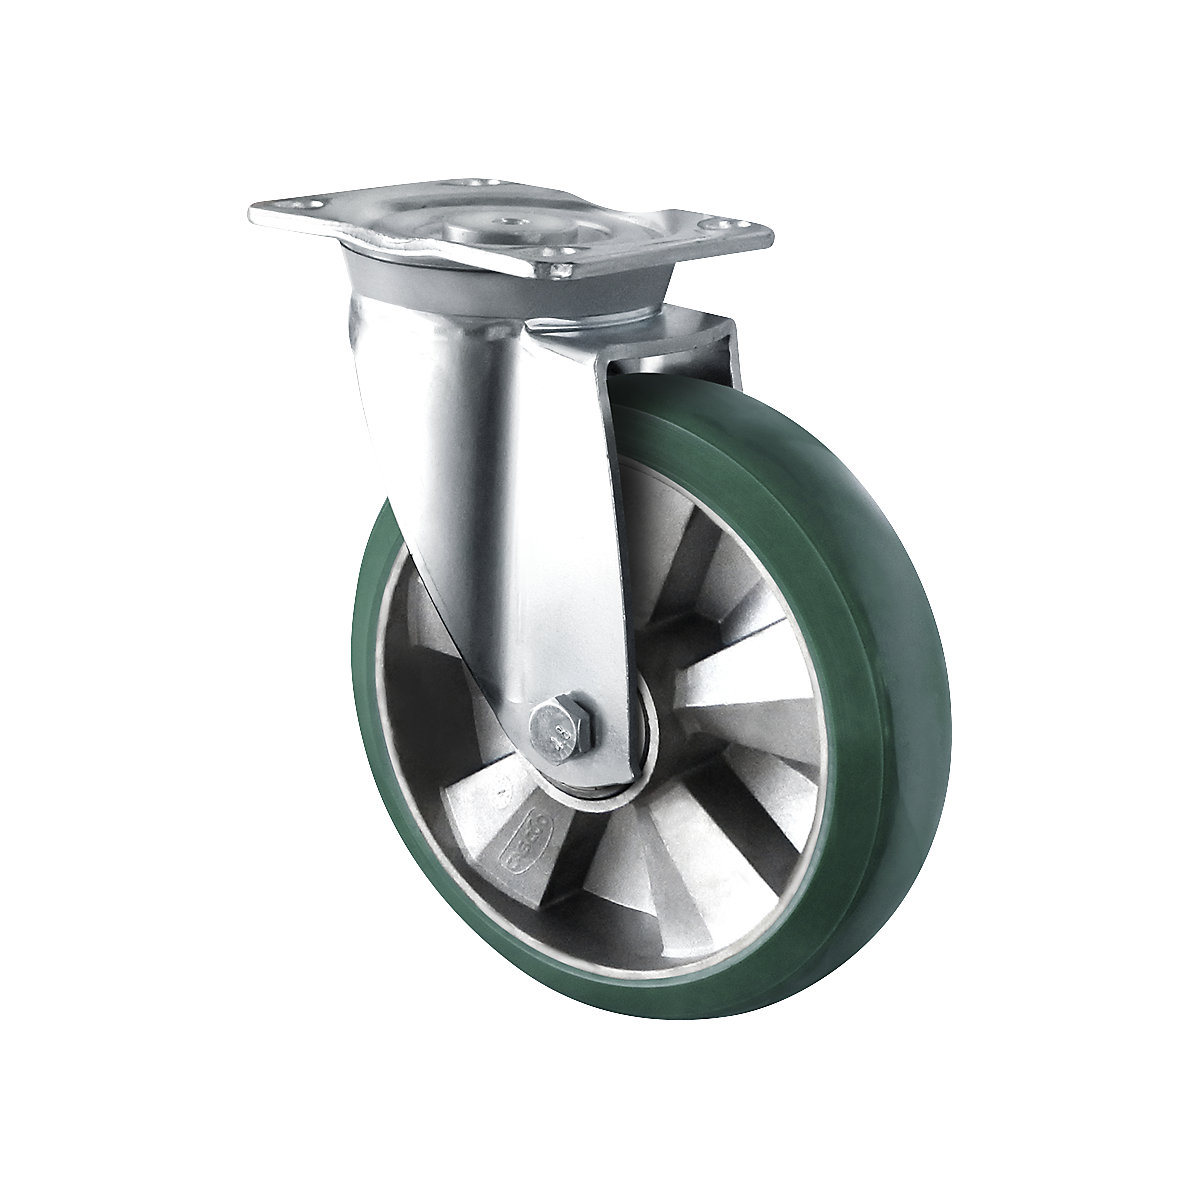 PU elastična guma, u zelenoj boji, Ø x širina kotača 125 x 50 mm, od 2 kom., okretni kotač-3